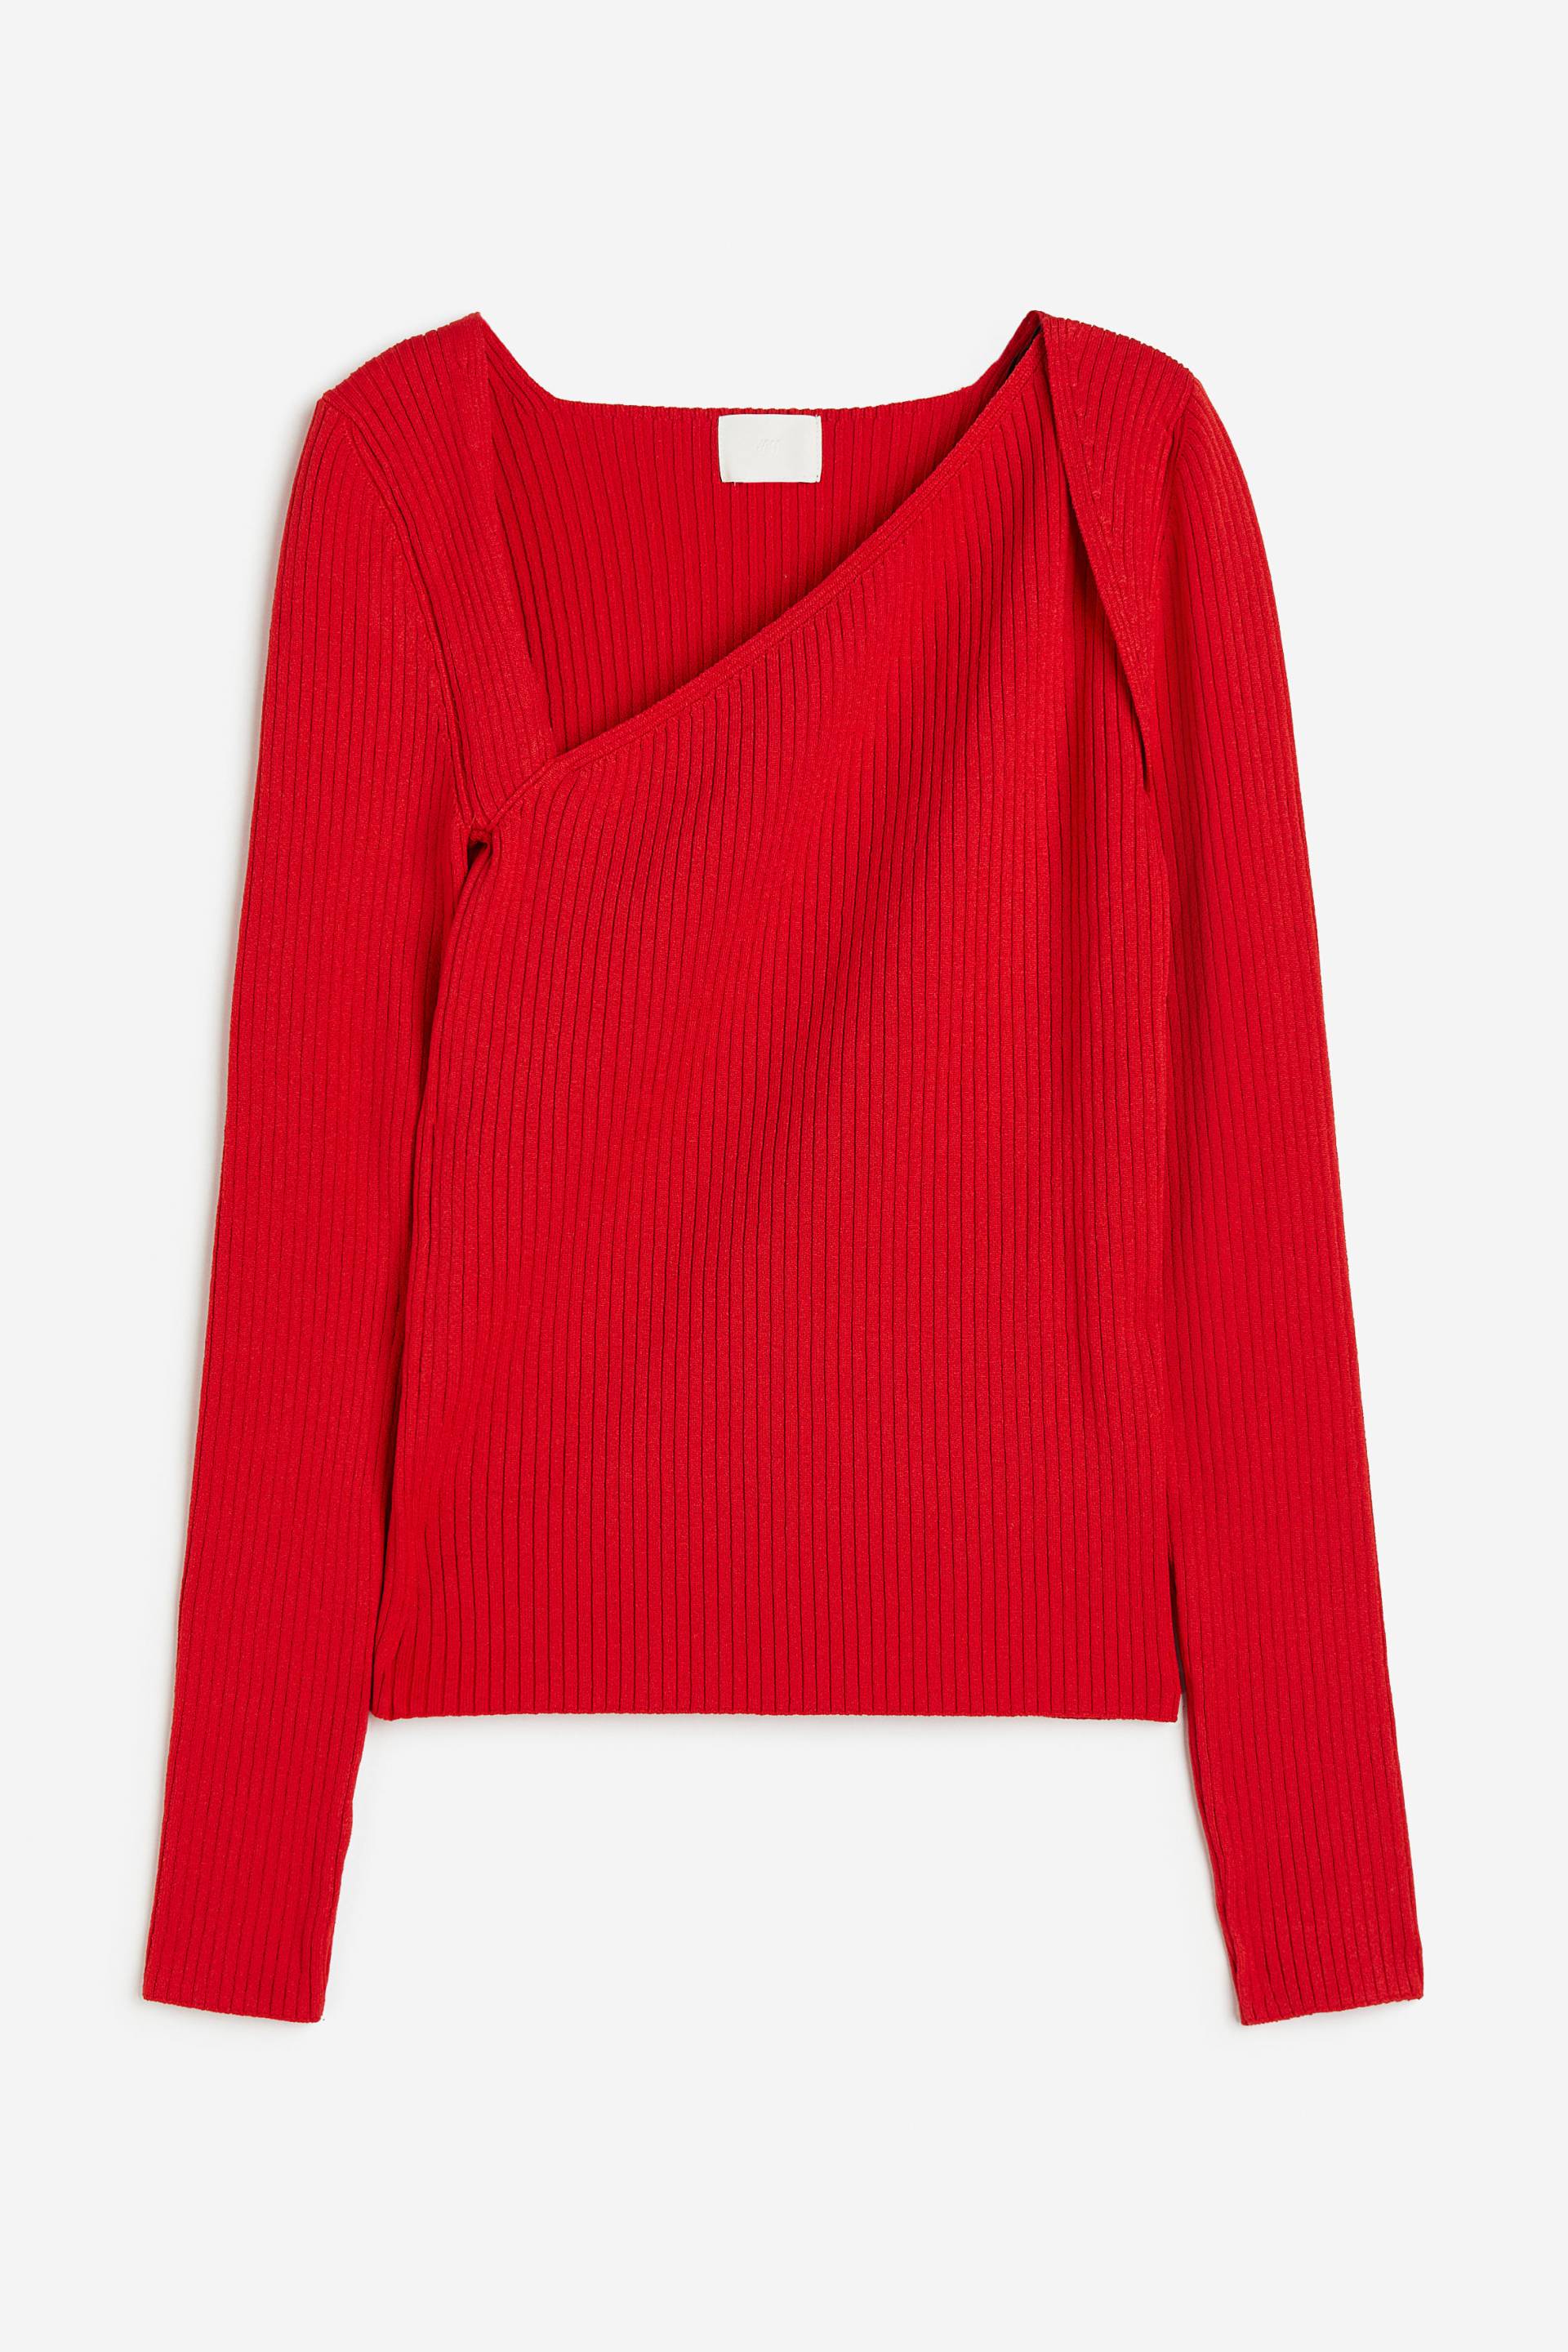 H&M Pullover mit asymmetrischem Ausschnitt Rot in Größe XXL. Farbe: Red von H&M